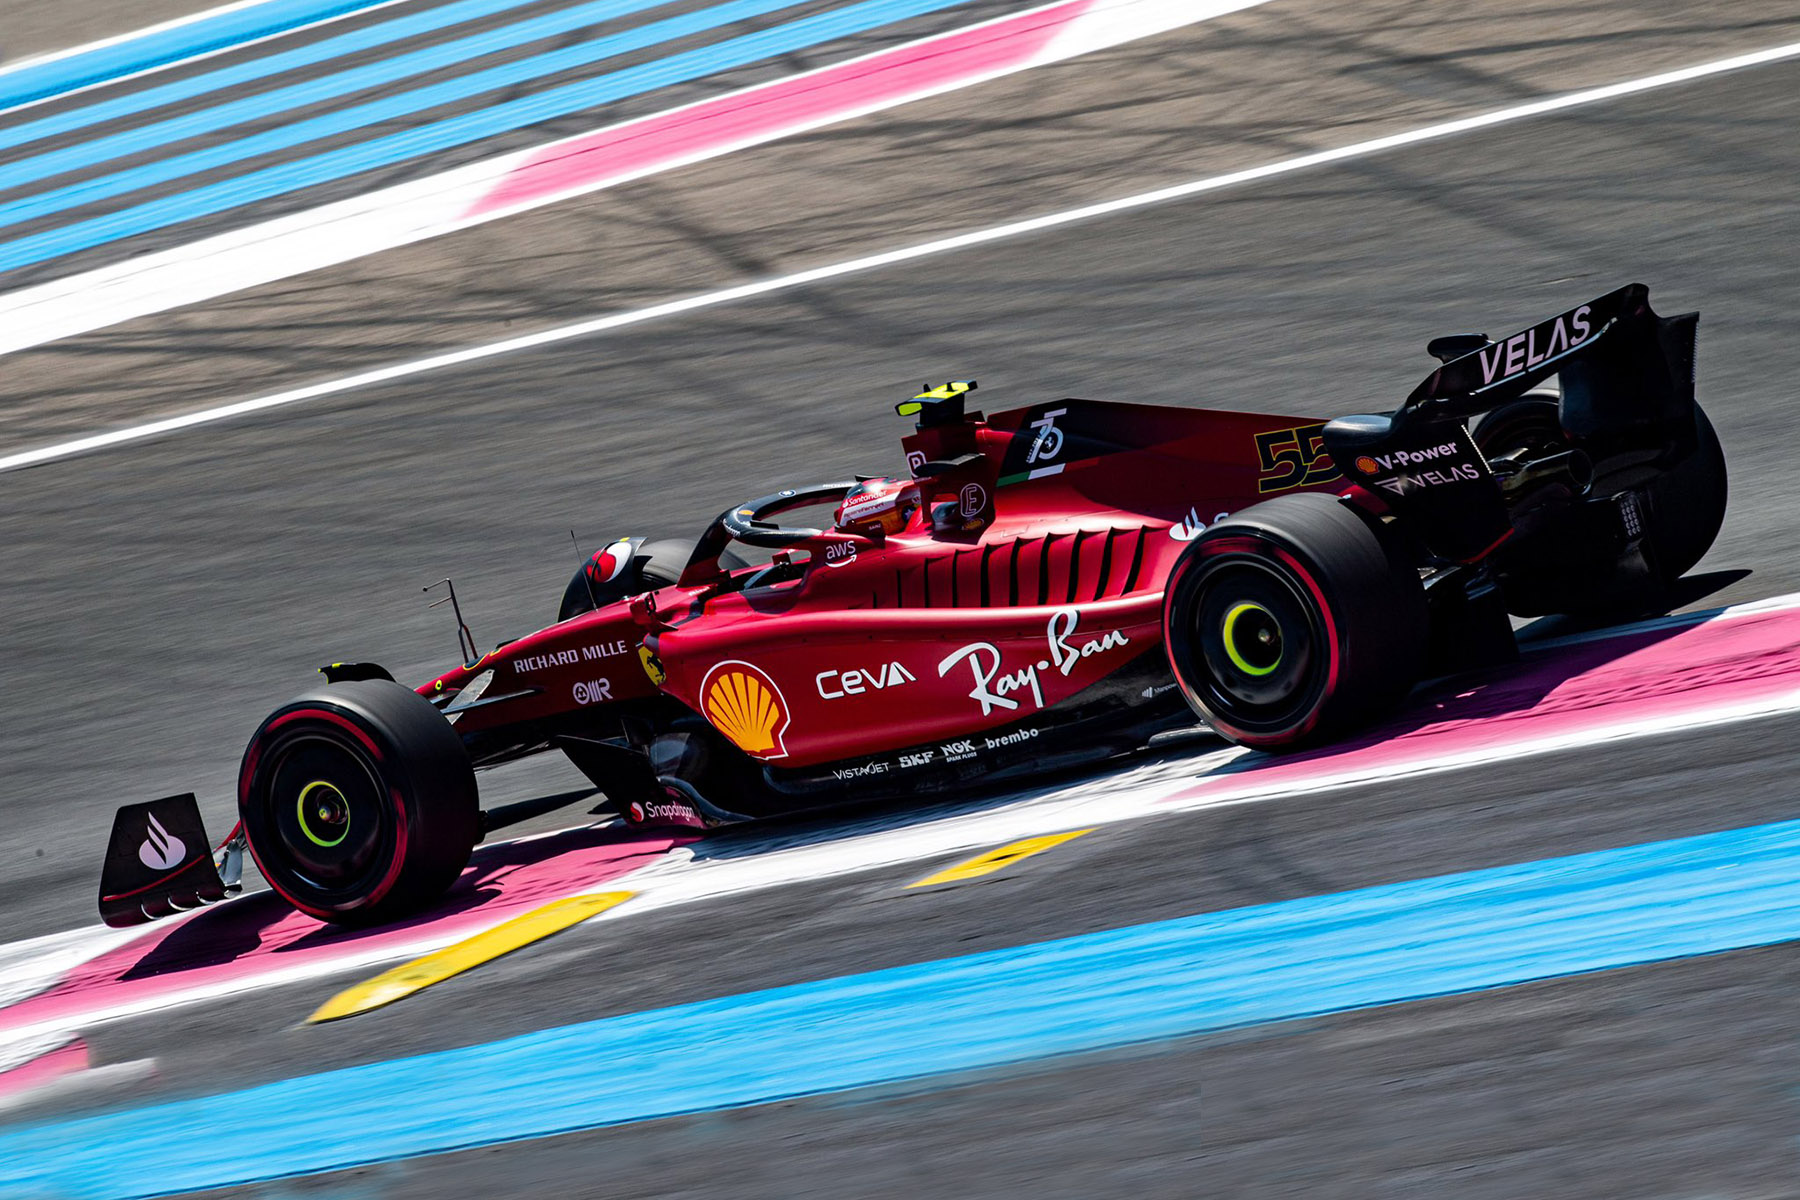 Formel 1 Ferrari in Frankreich stark, aber Grid-Strafe für Sainz